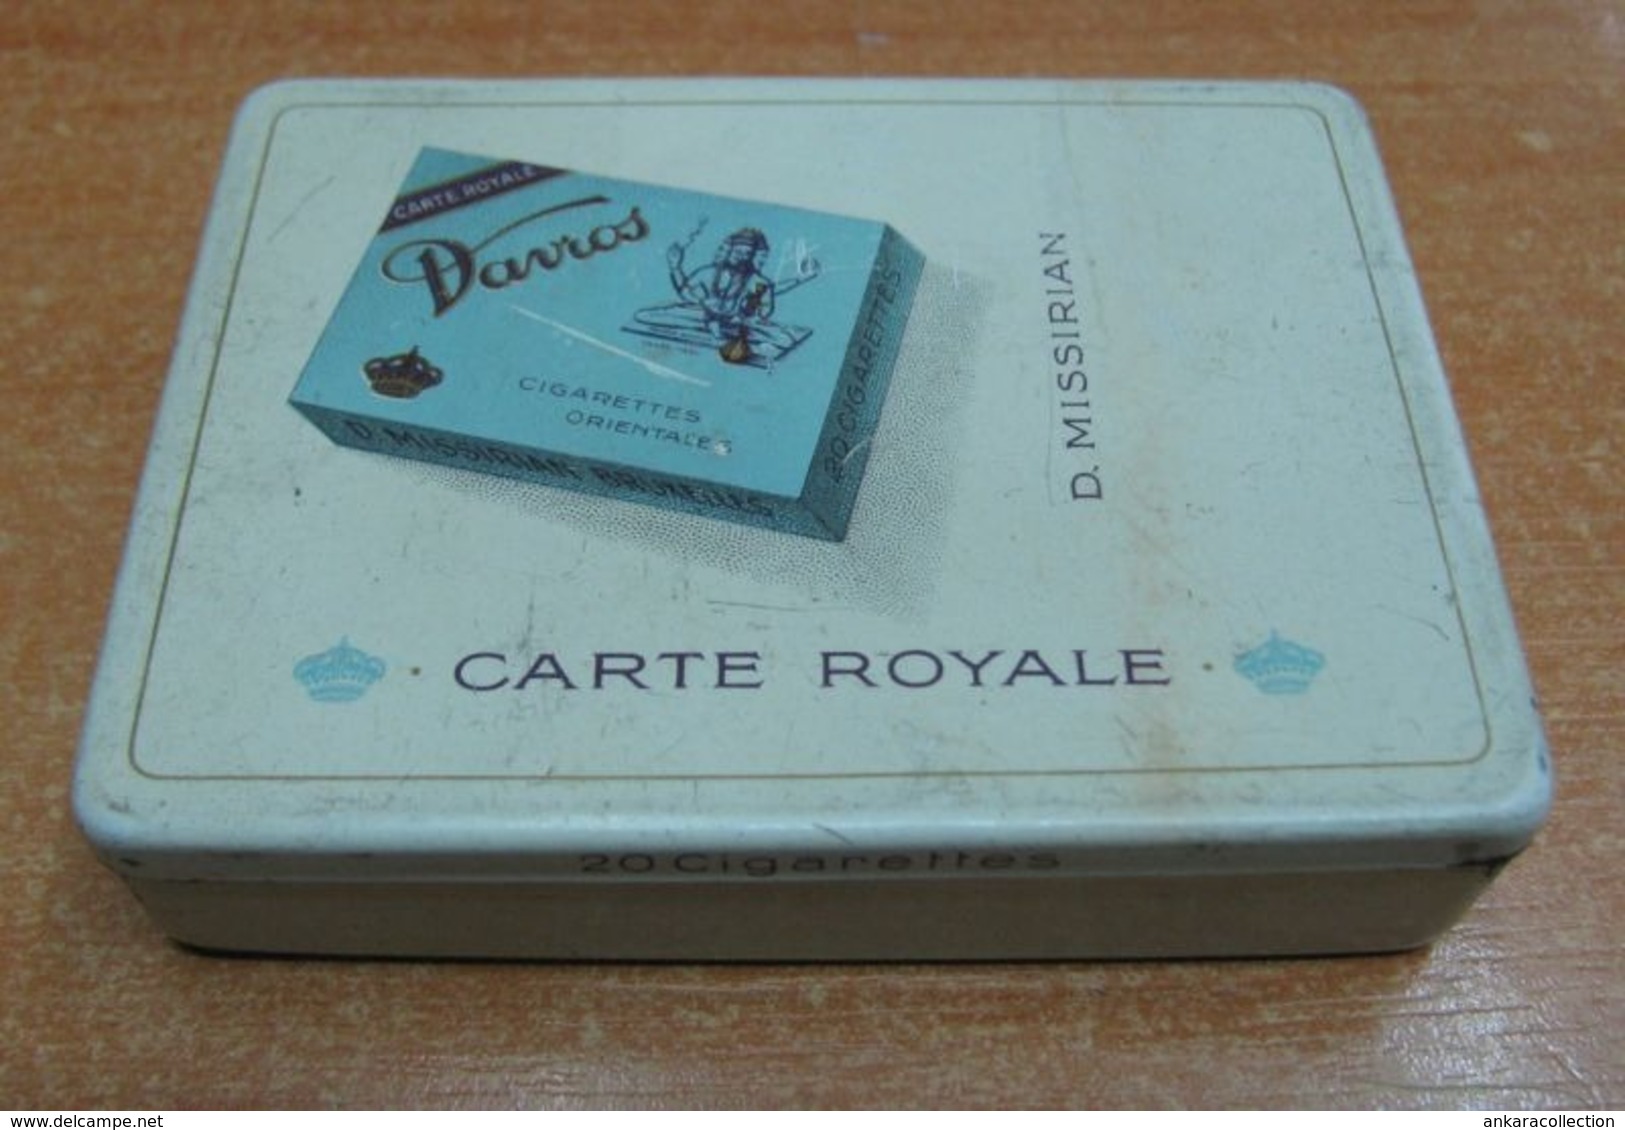 AC - CARTE ROYALE DAVROS D. MISSIRIAN CIGARETTE - TOBACCO EMPTY VINTAGE TIN BOX - Contenitori Di Tabacco (vuoti)